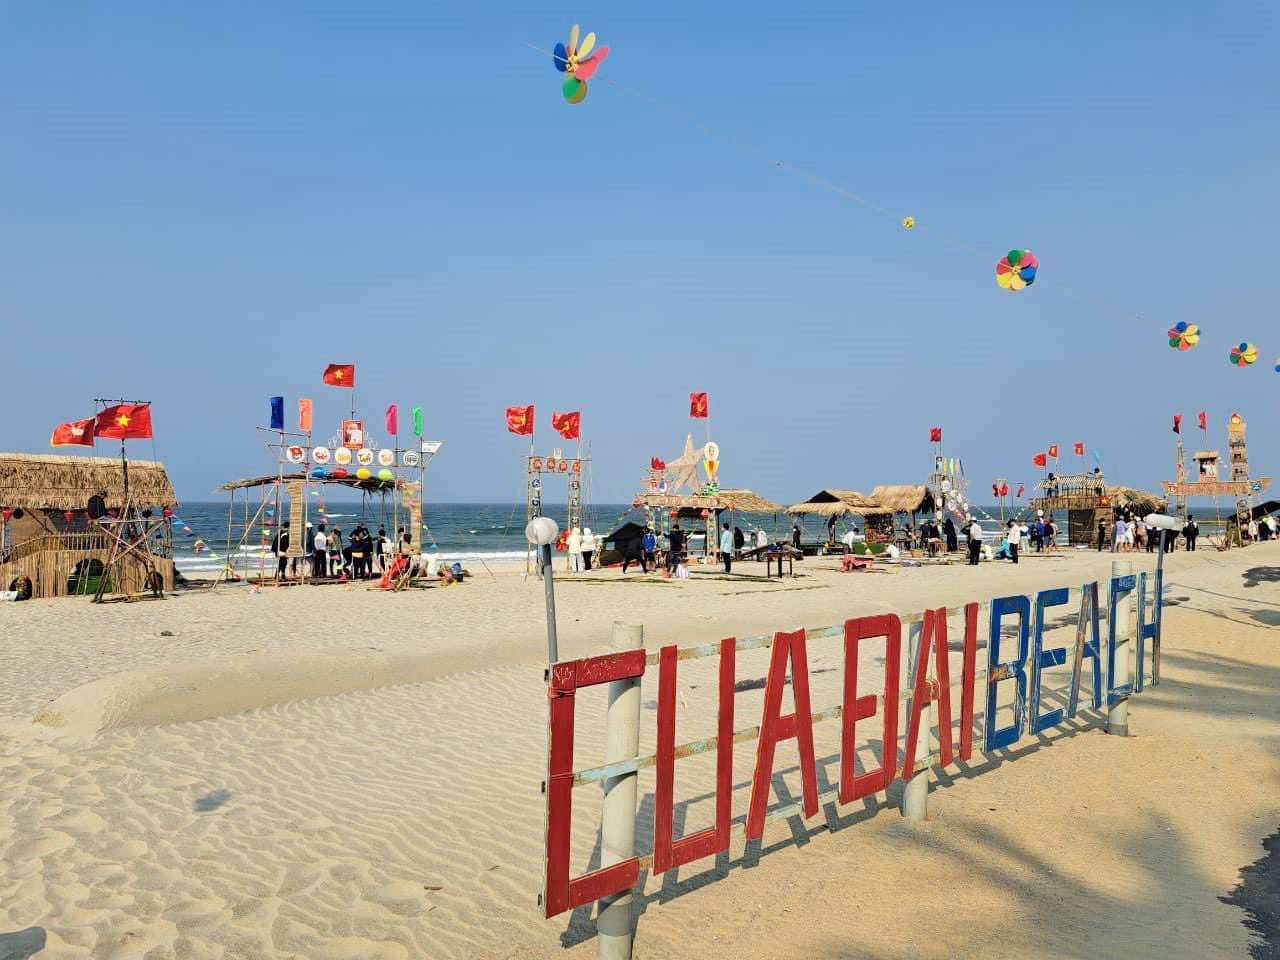 Hội An sẽ tổ chức nhiều hoạt động tại bãi biển Cửa Đại vào dịp cuối tuần để thuận lợi cho du khách tham gia và trải nghiệm.